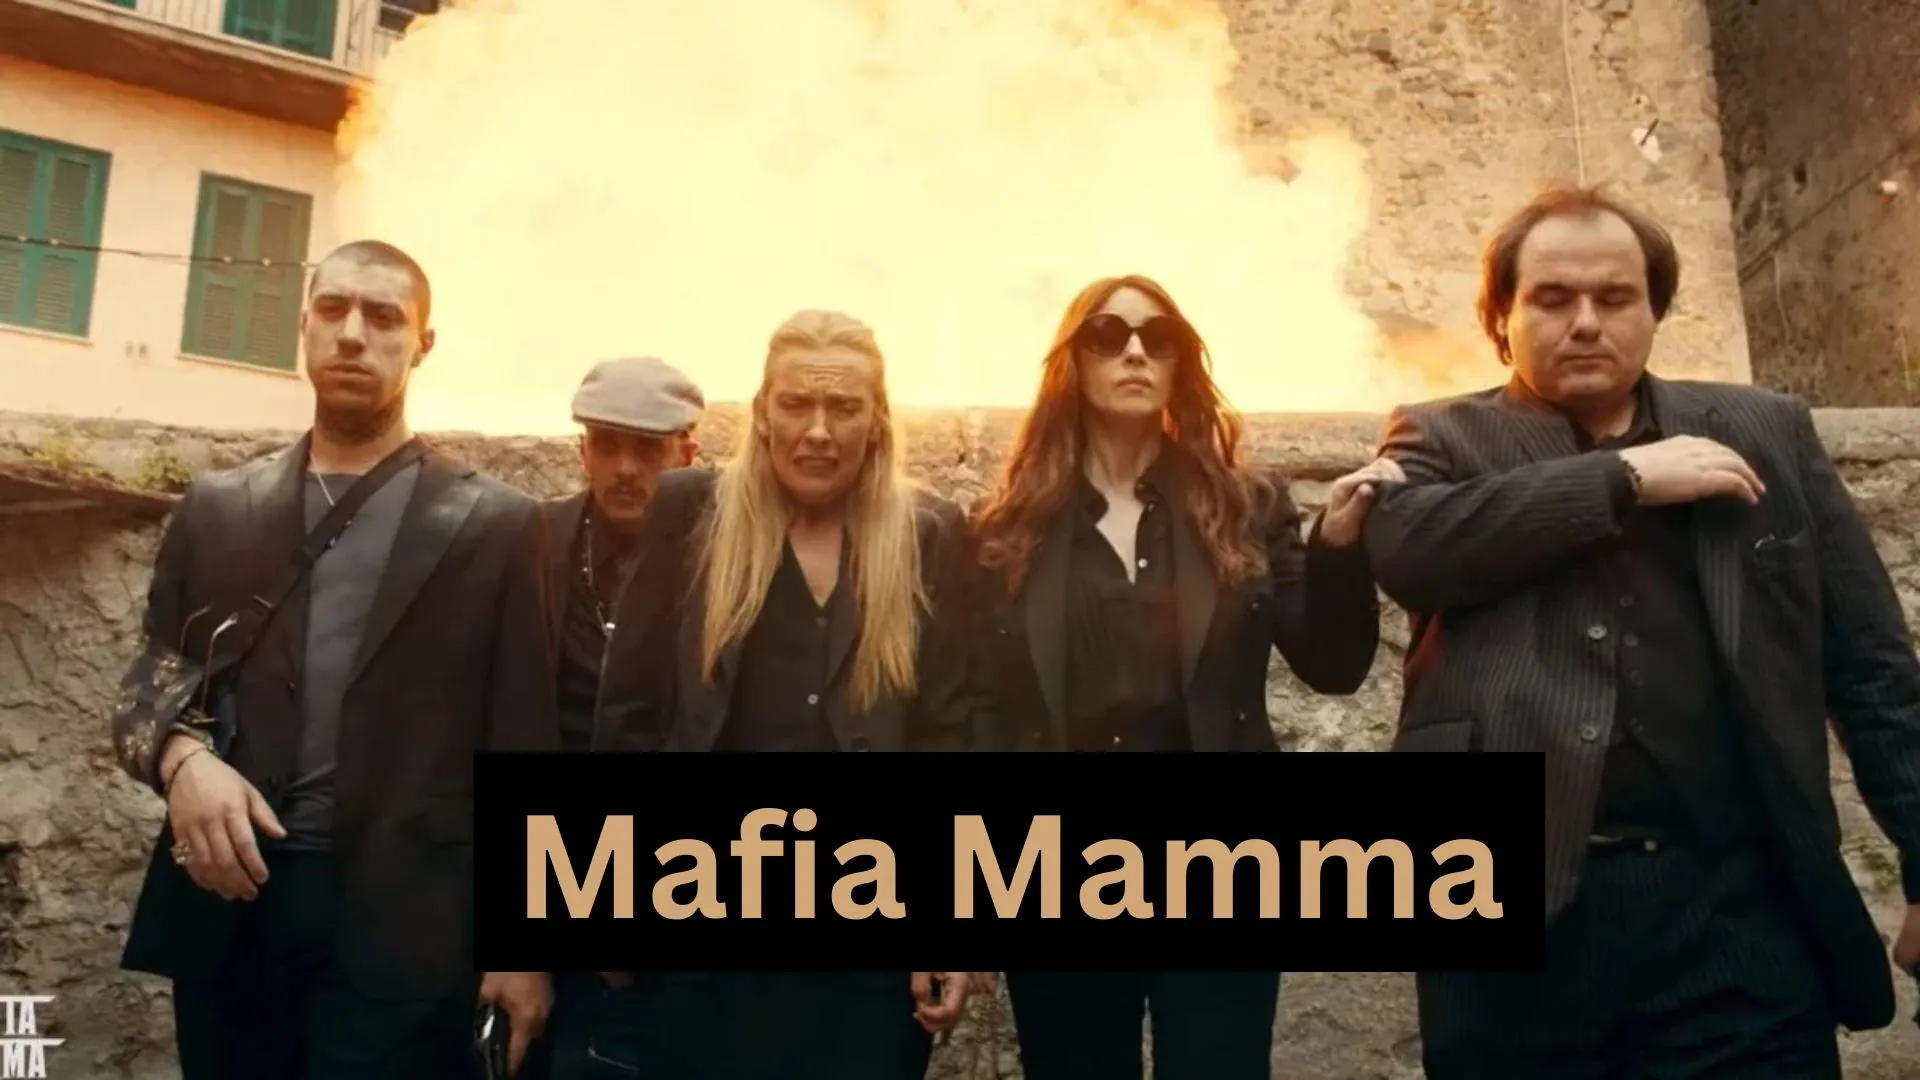 Mafia Mamma Parents Guide